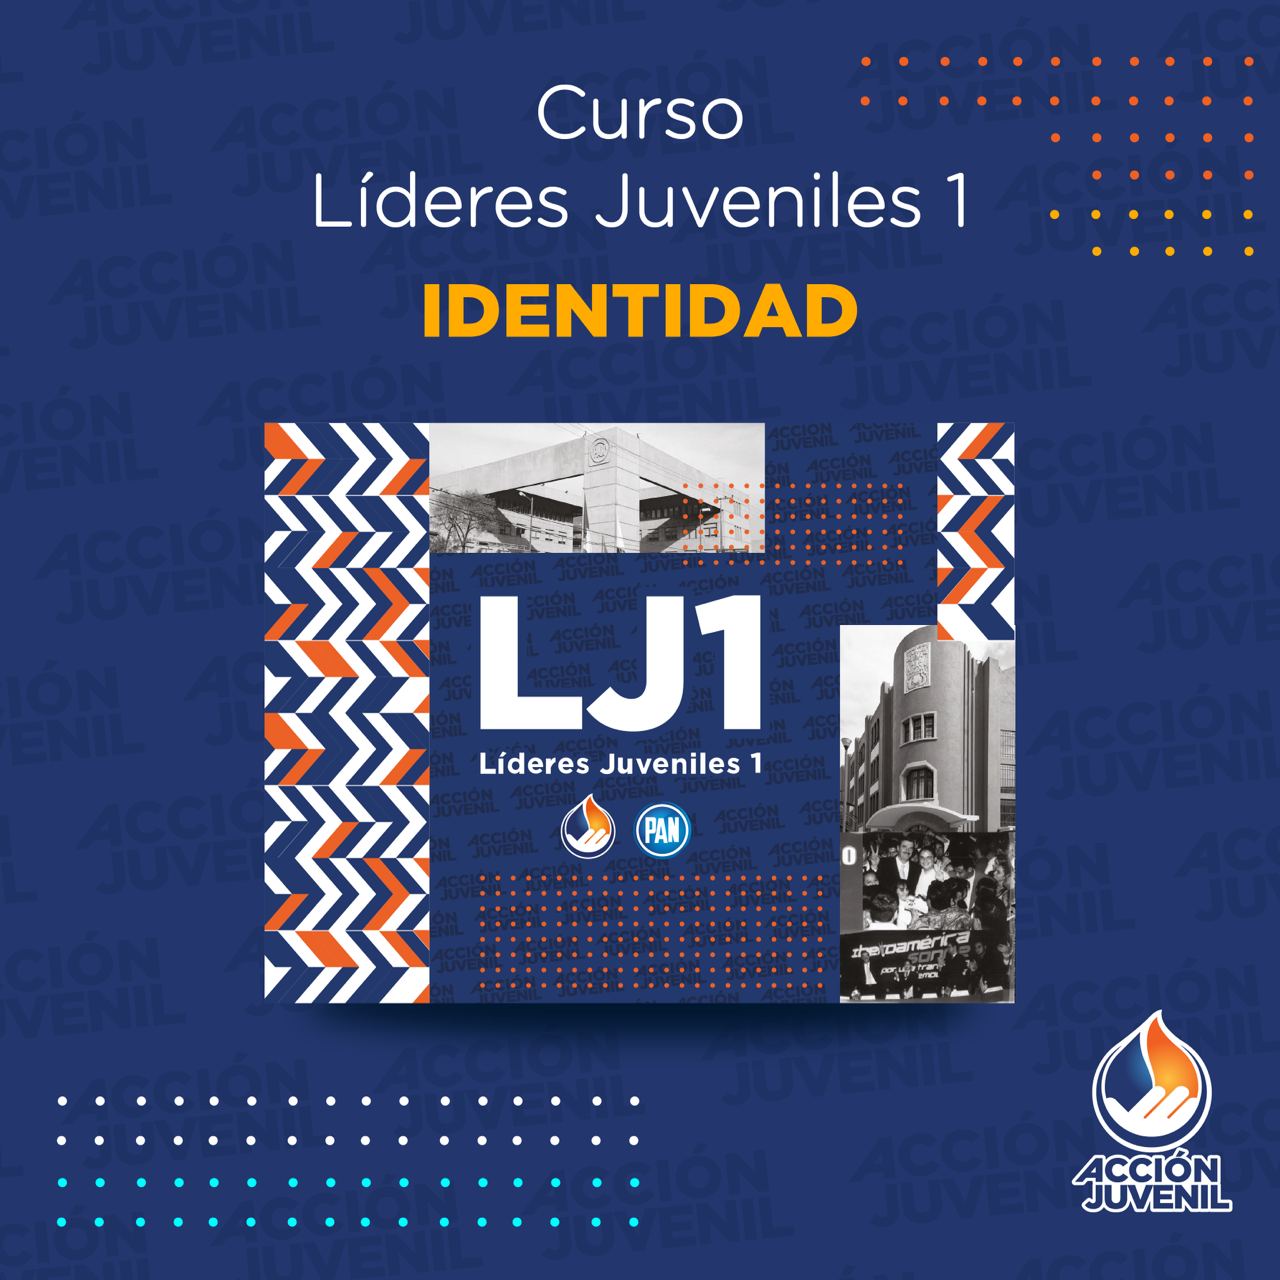 Curso Líderes Juveniles 1 Identidad Puebla de Zaragoza, PUE 02/02/22